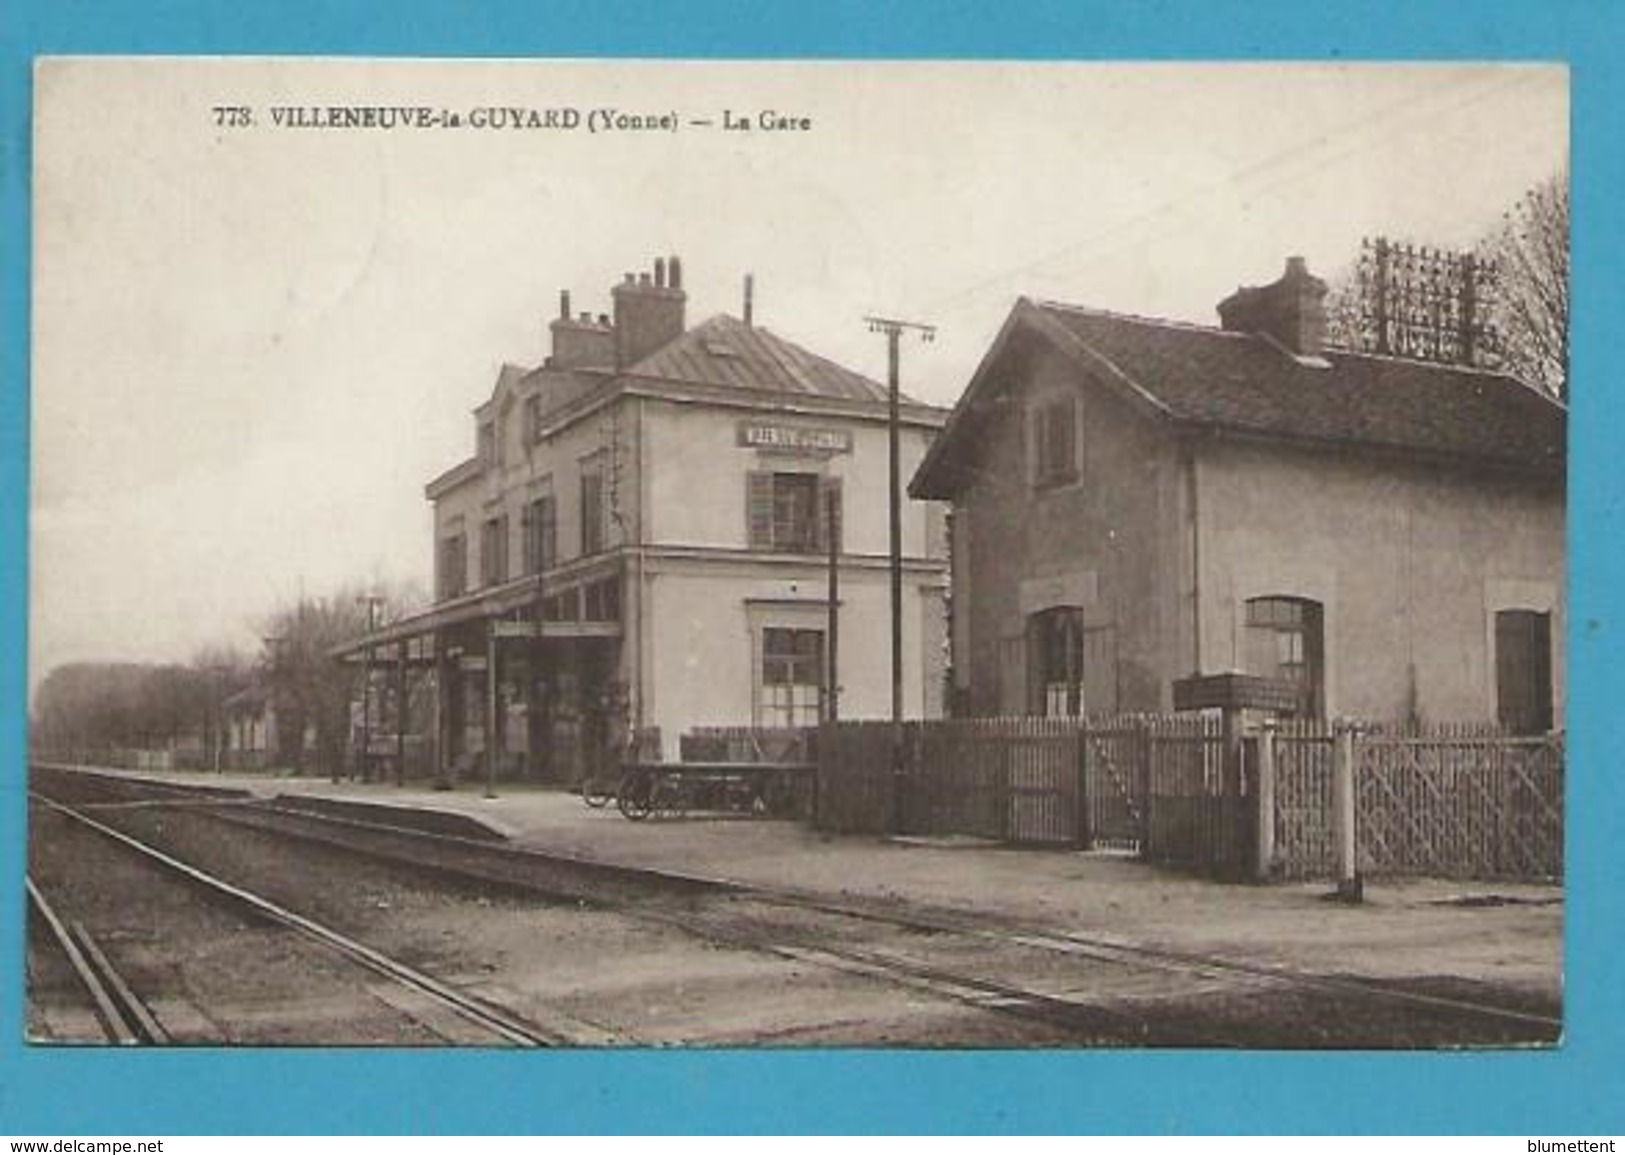 CPSM 773 - Chemin De Fer La Gare VILLENEUVE-LA-GUYARD 89 - Villeneuve-la-Guyard